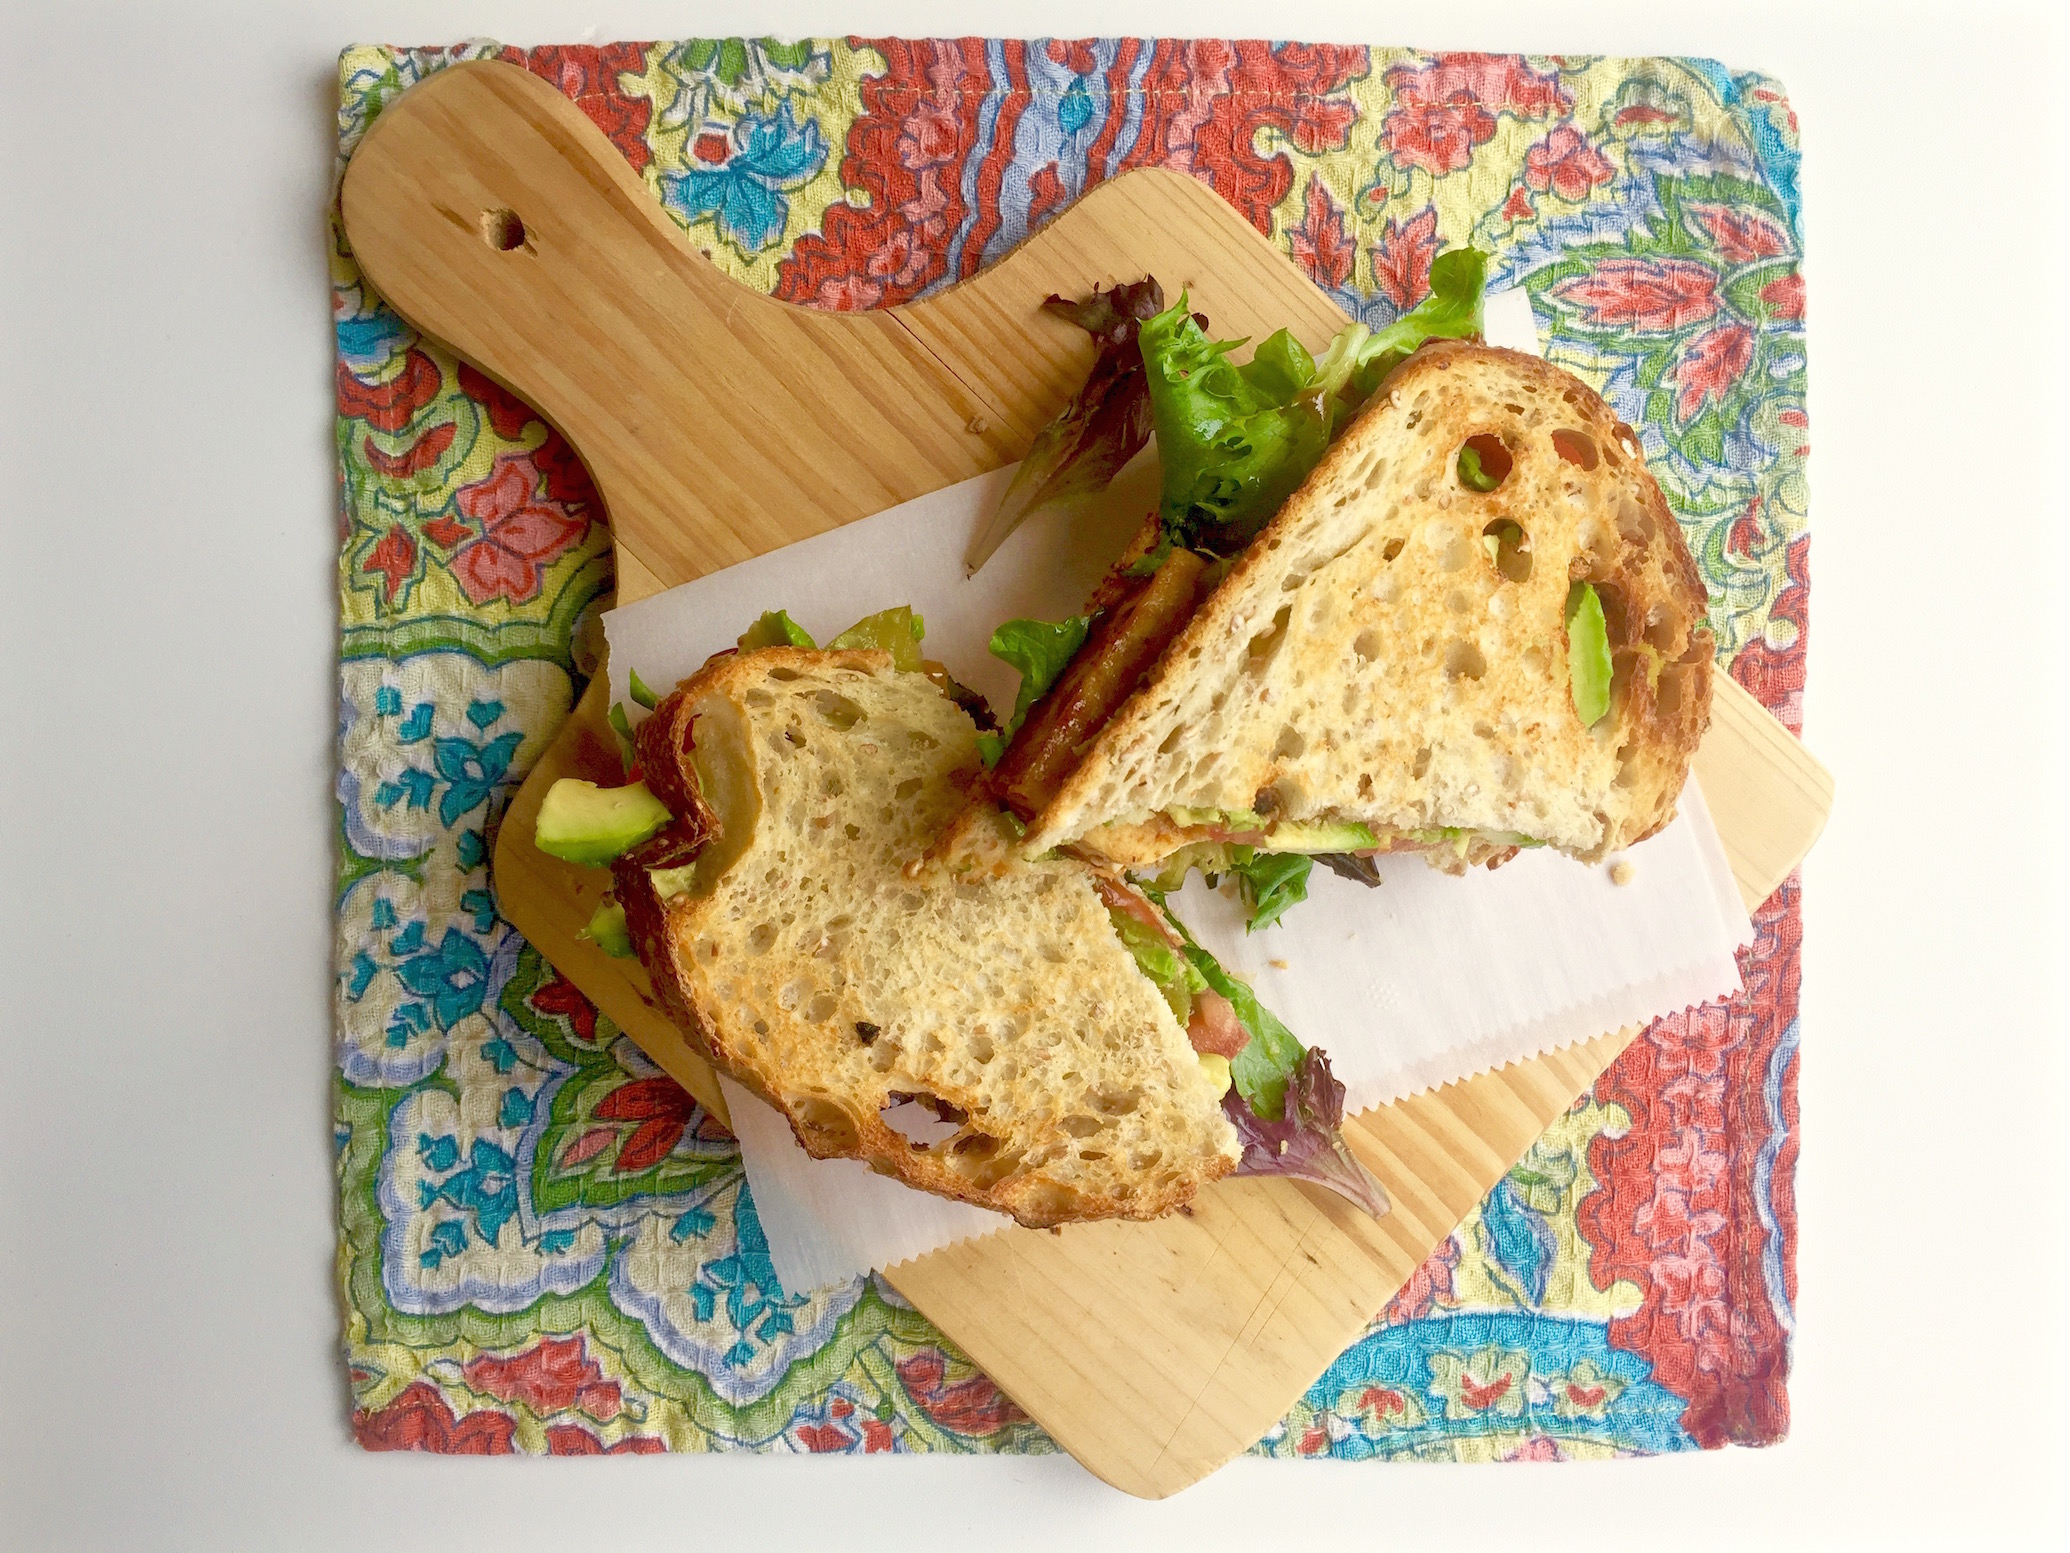 BBQ Tofu Sandwich on a cutting board.